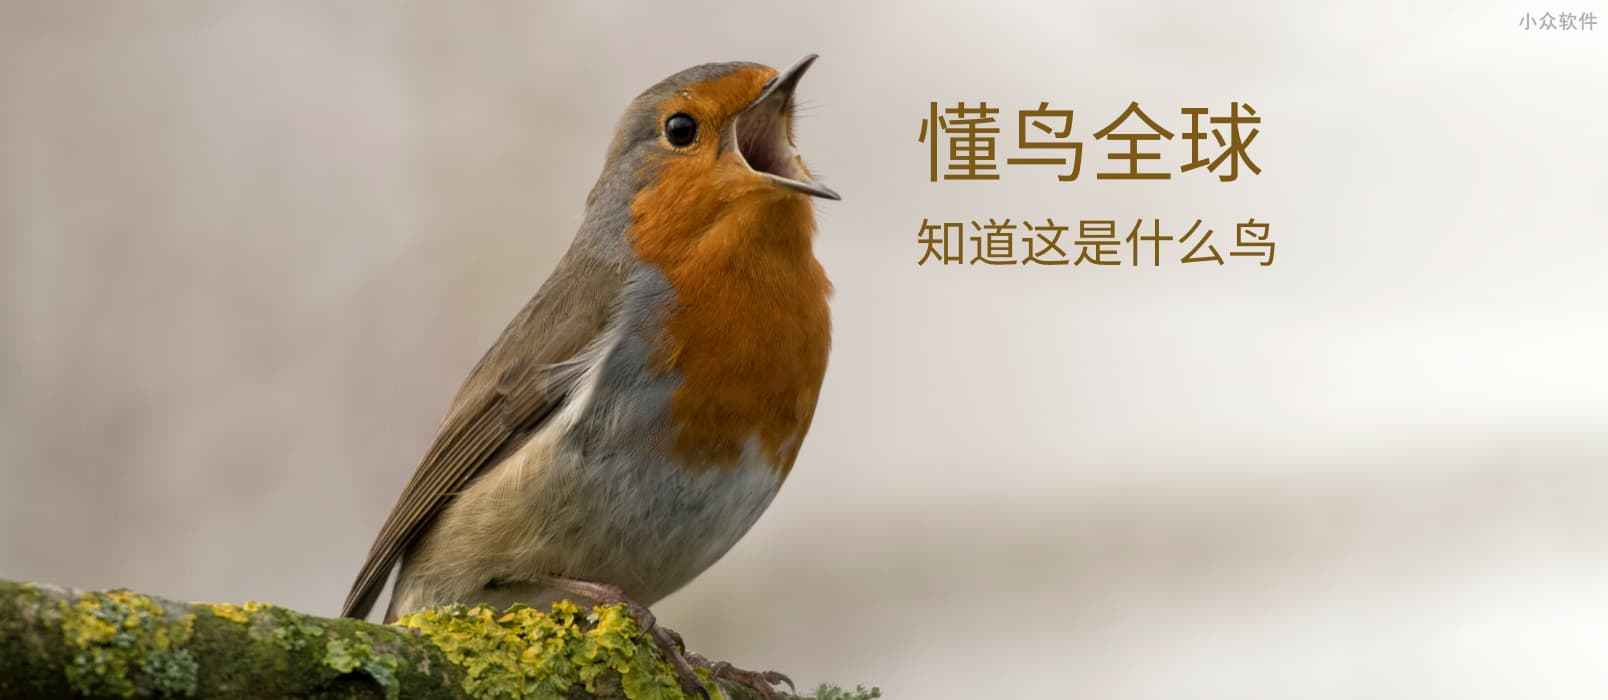 懂鸟全球 – 智能识别 10928 种鸟类名称[微信小程序/Web]